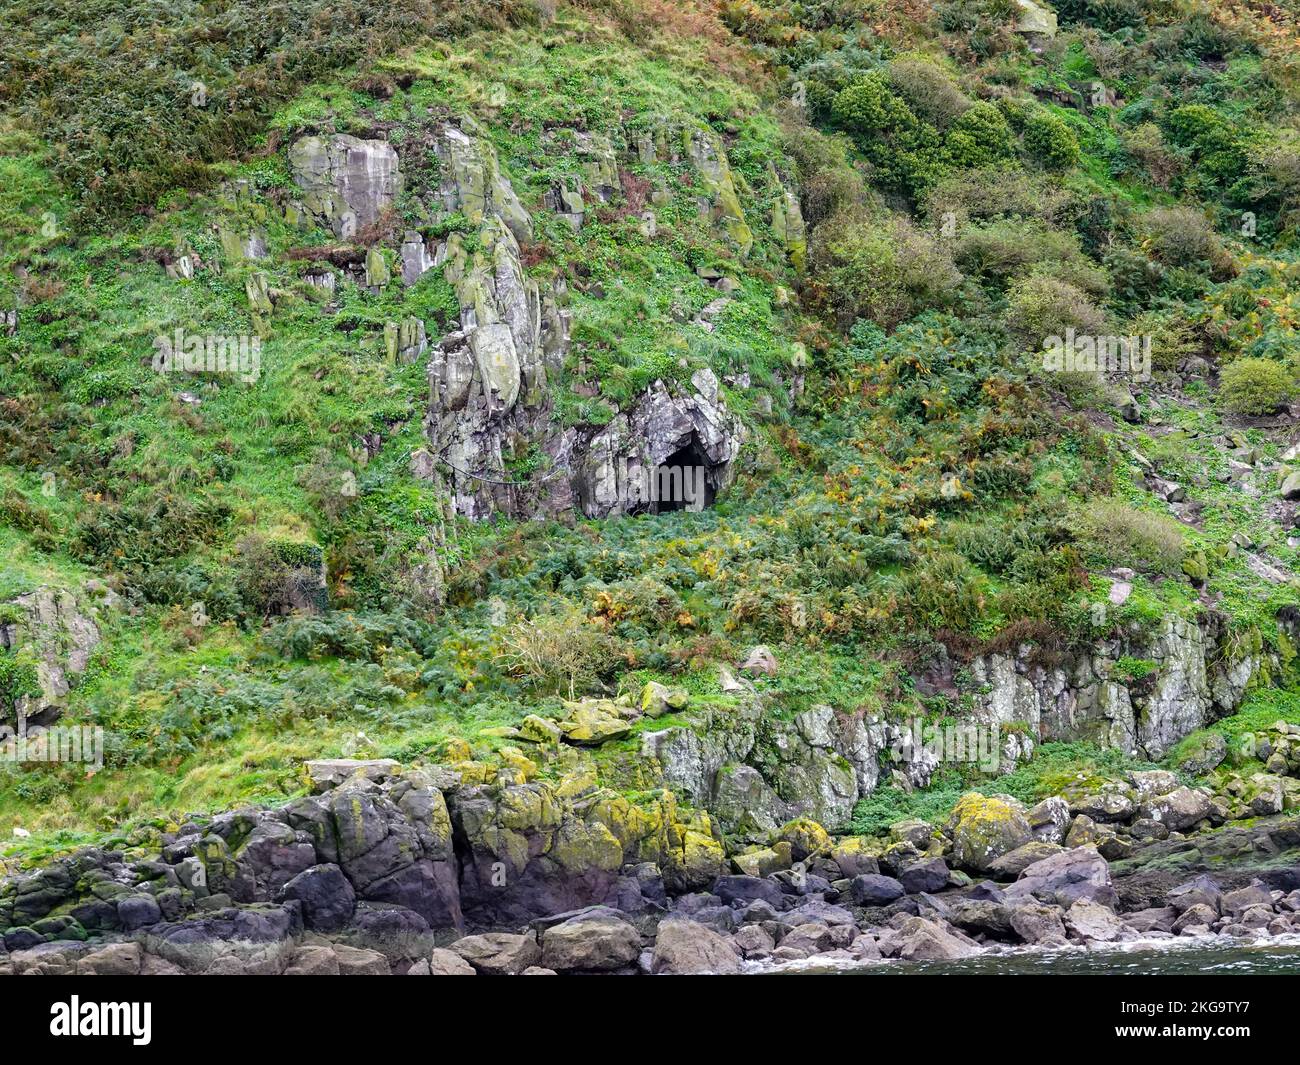 Apertura della grotta sul lato roccioso dell'isola di Little Cumbrae, situata nel Firth of Clyde, Scozia, Regno Unito. Foto Stock